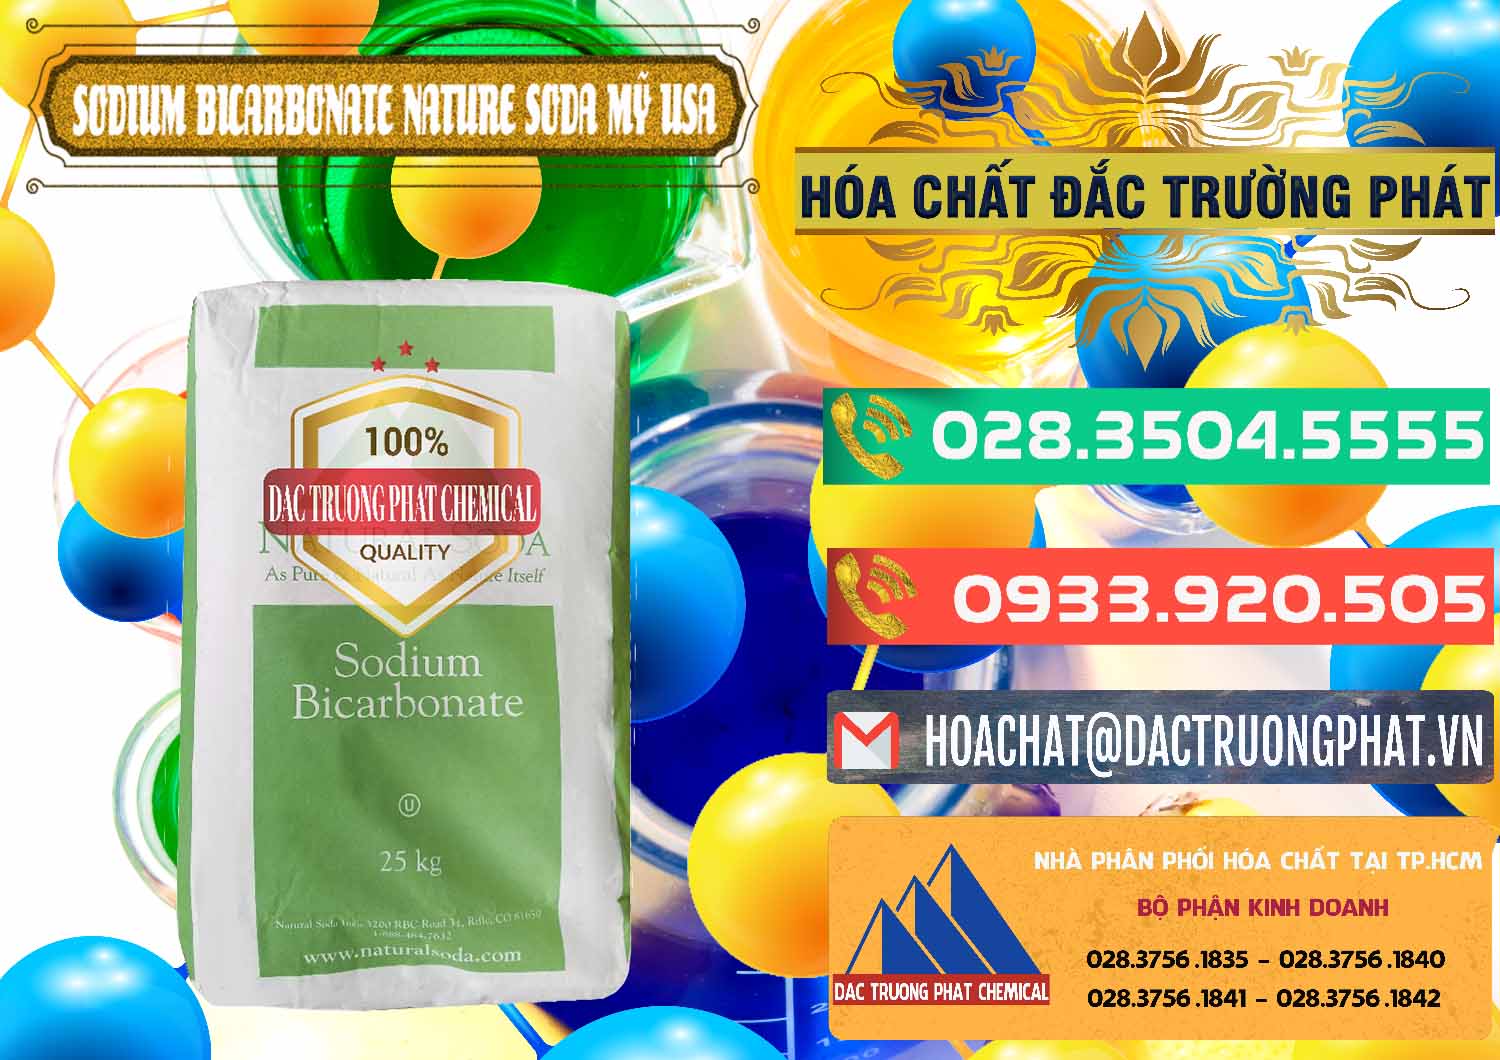 Cty bán _ phân phối Sodium Bicarbonate – Bicar NaHCO3 Food Grade Nature Soda Mỹ USA - 0256 - Chuyên nhập khẩu và cung cấp hóa chất tại TP.HCM - congtyhoachat.com.vn